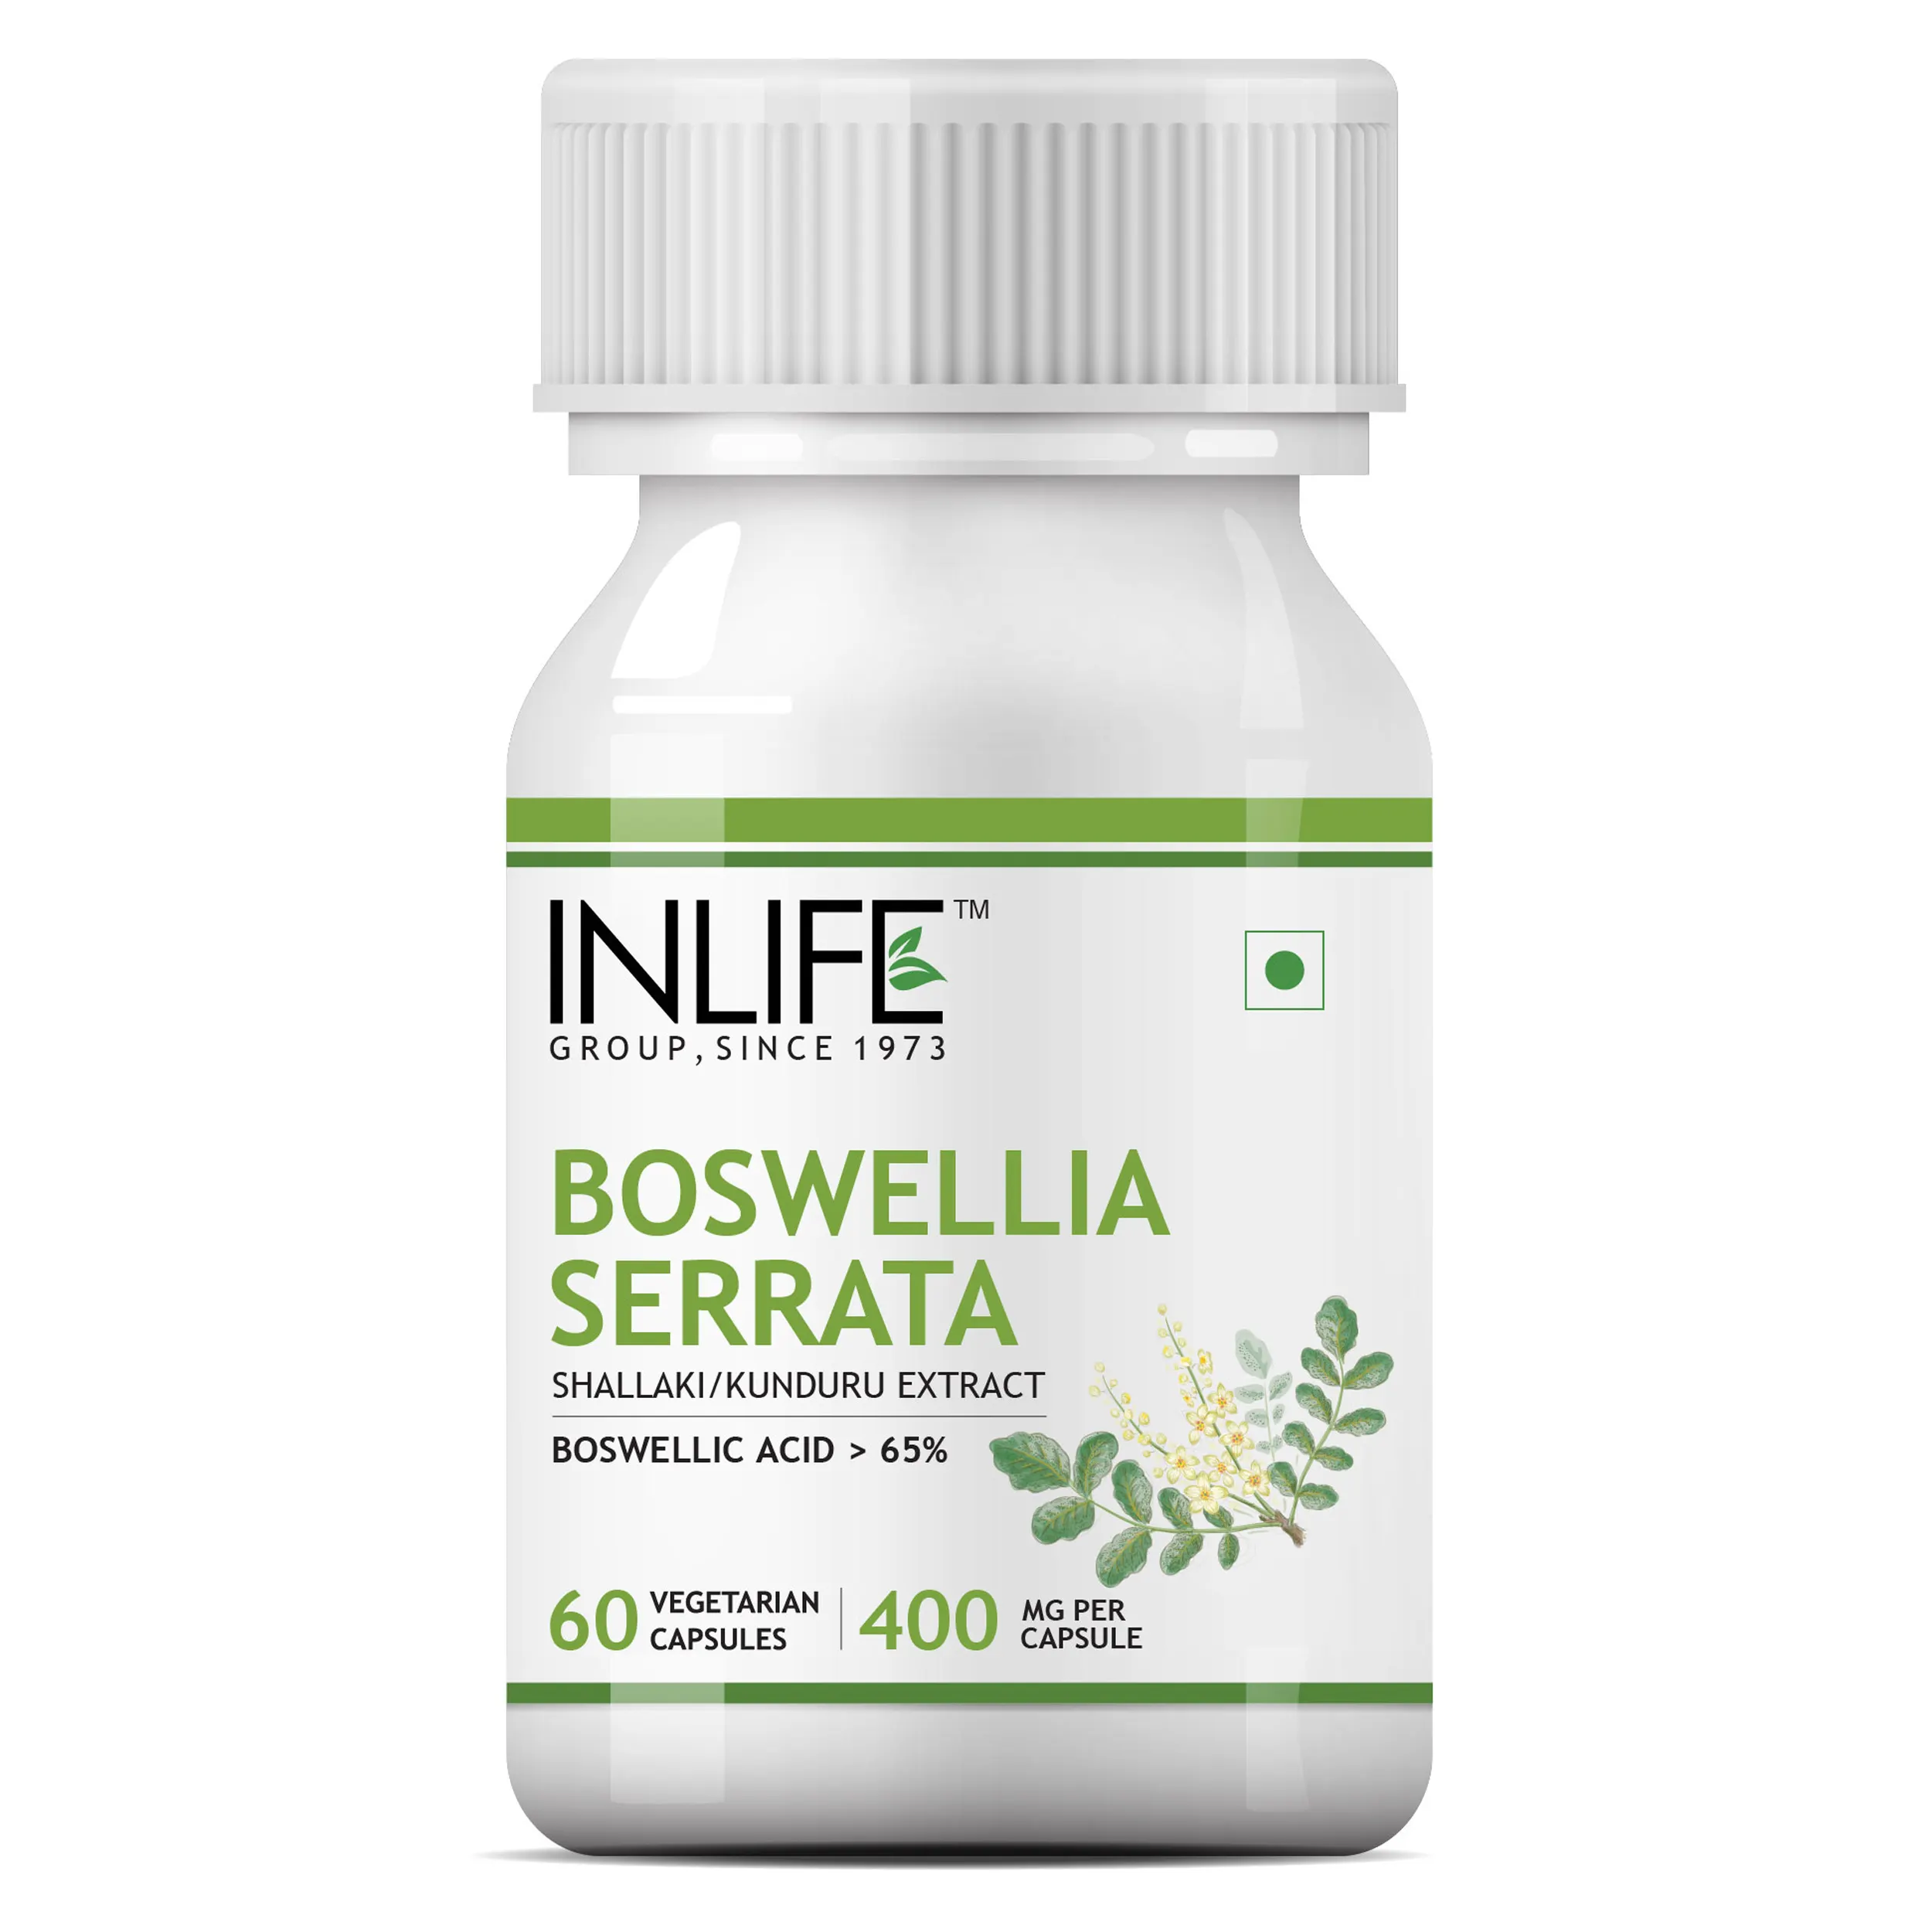 INLIFE Boswellia Serrata תמצית (Boswellic חומצות> 65%) משותף תוספת לטיפול, 400 mg - 60 קפסולות צמחוניות